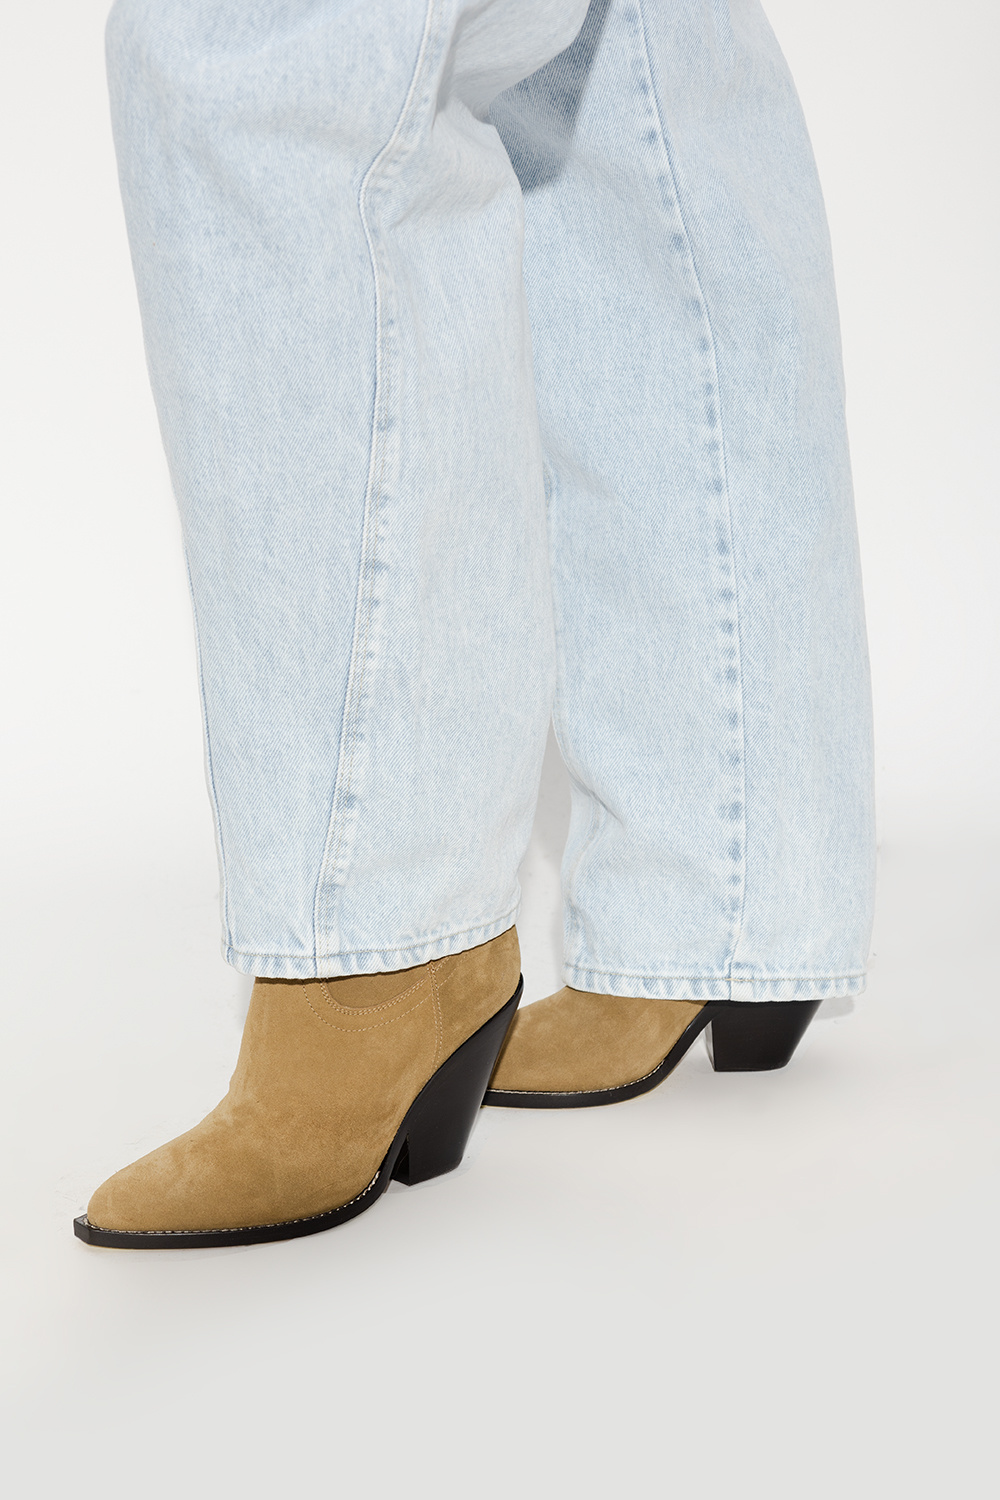 Isabel Marant ‘Leyane’ heeled ankle boots